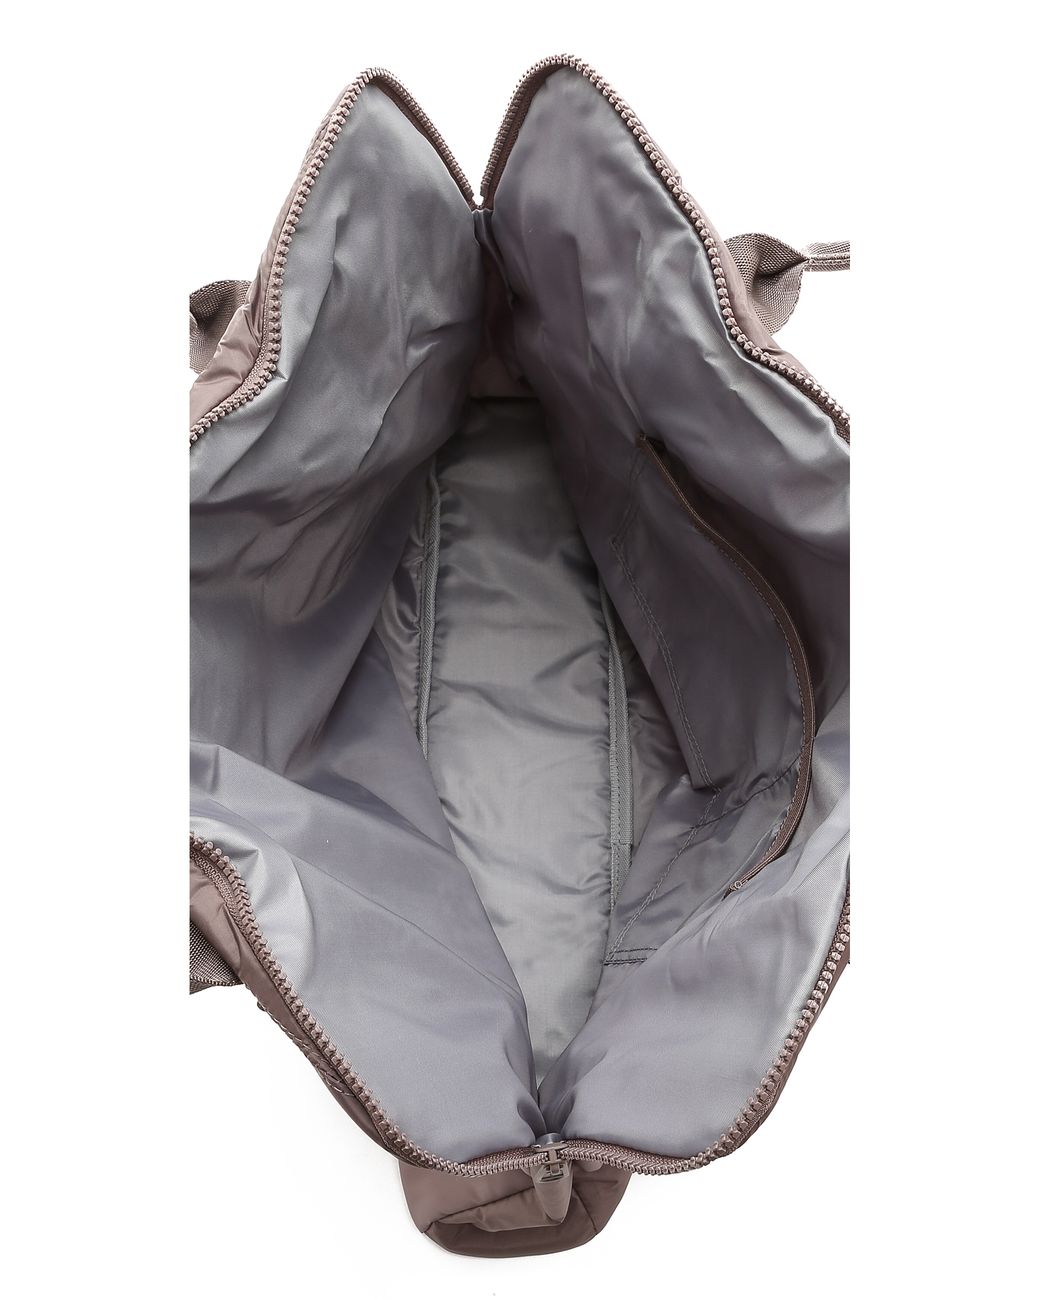 adidas By Stella McCartney Yoga Bag - Cement Grey in Gray | Lyst